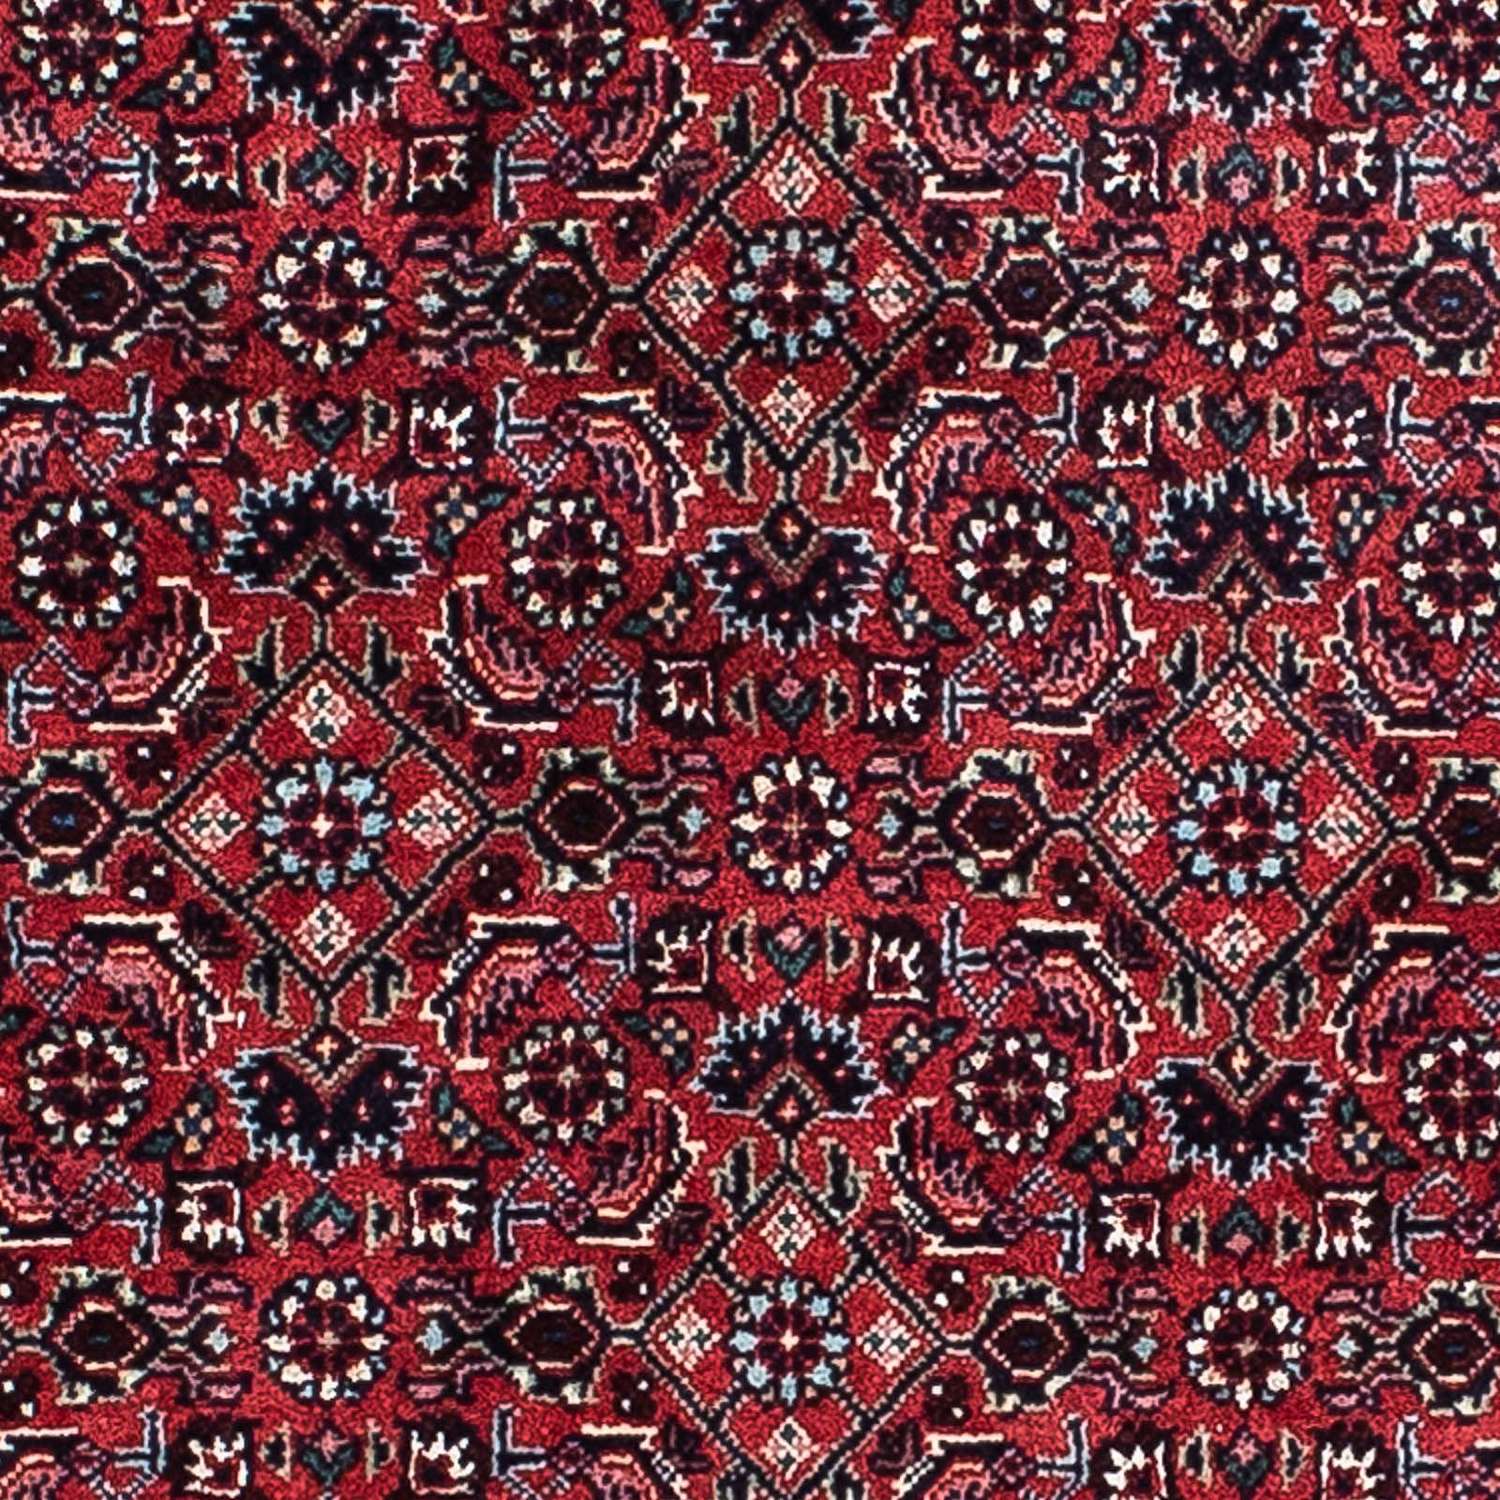 Tapis persan - Bidjar - 207 x 132 cm - rouge clair